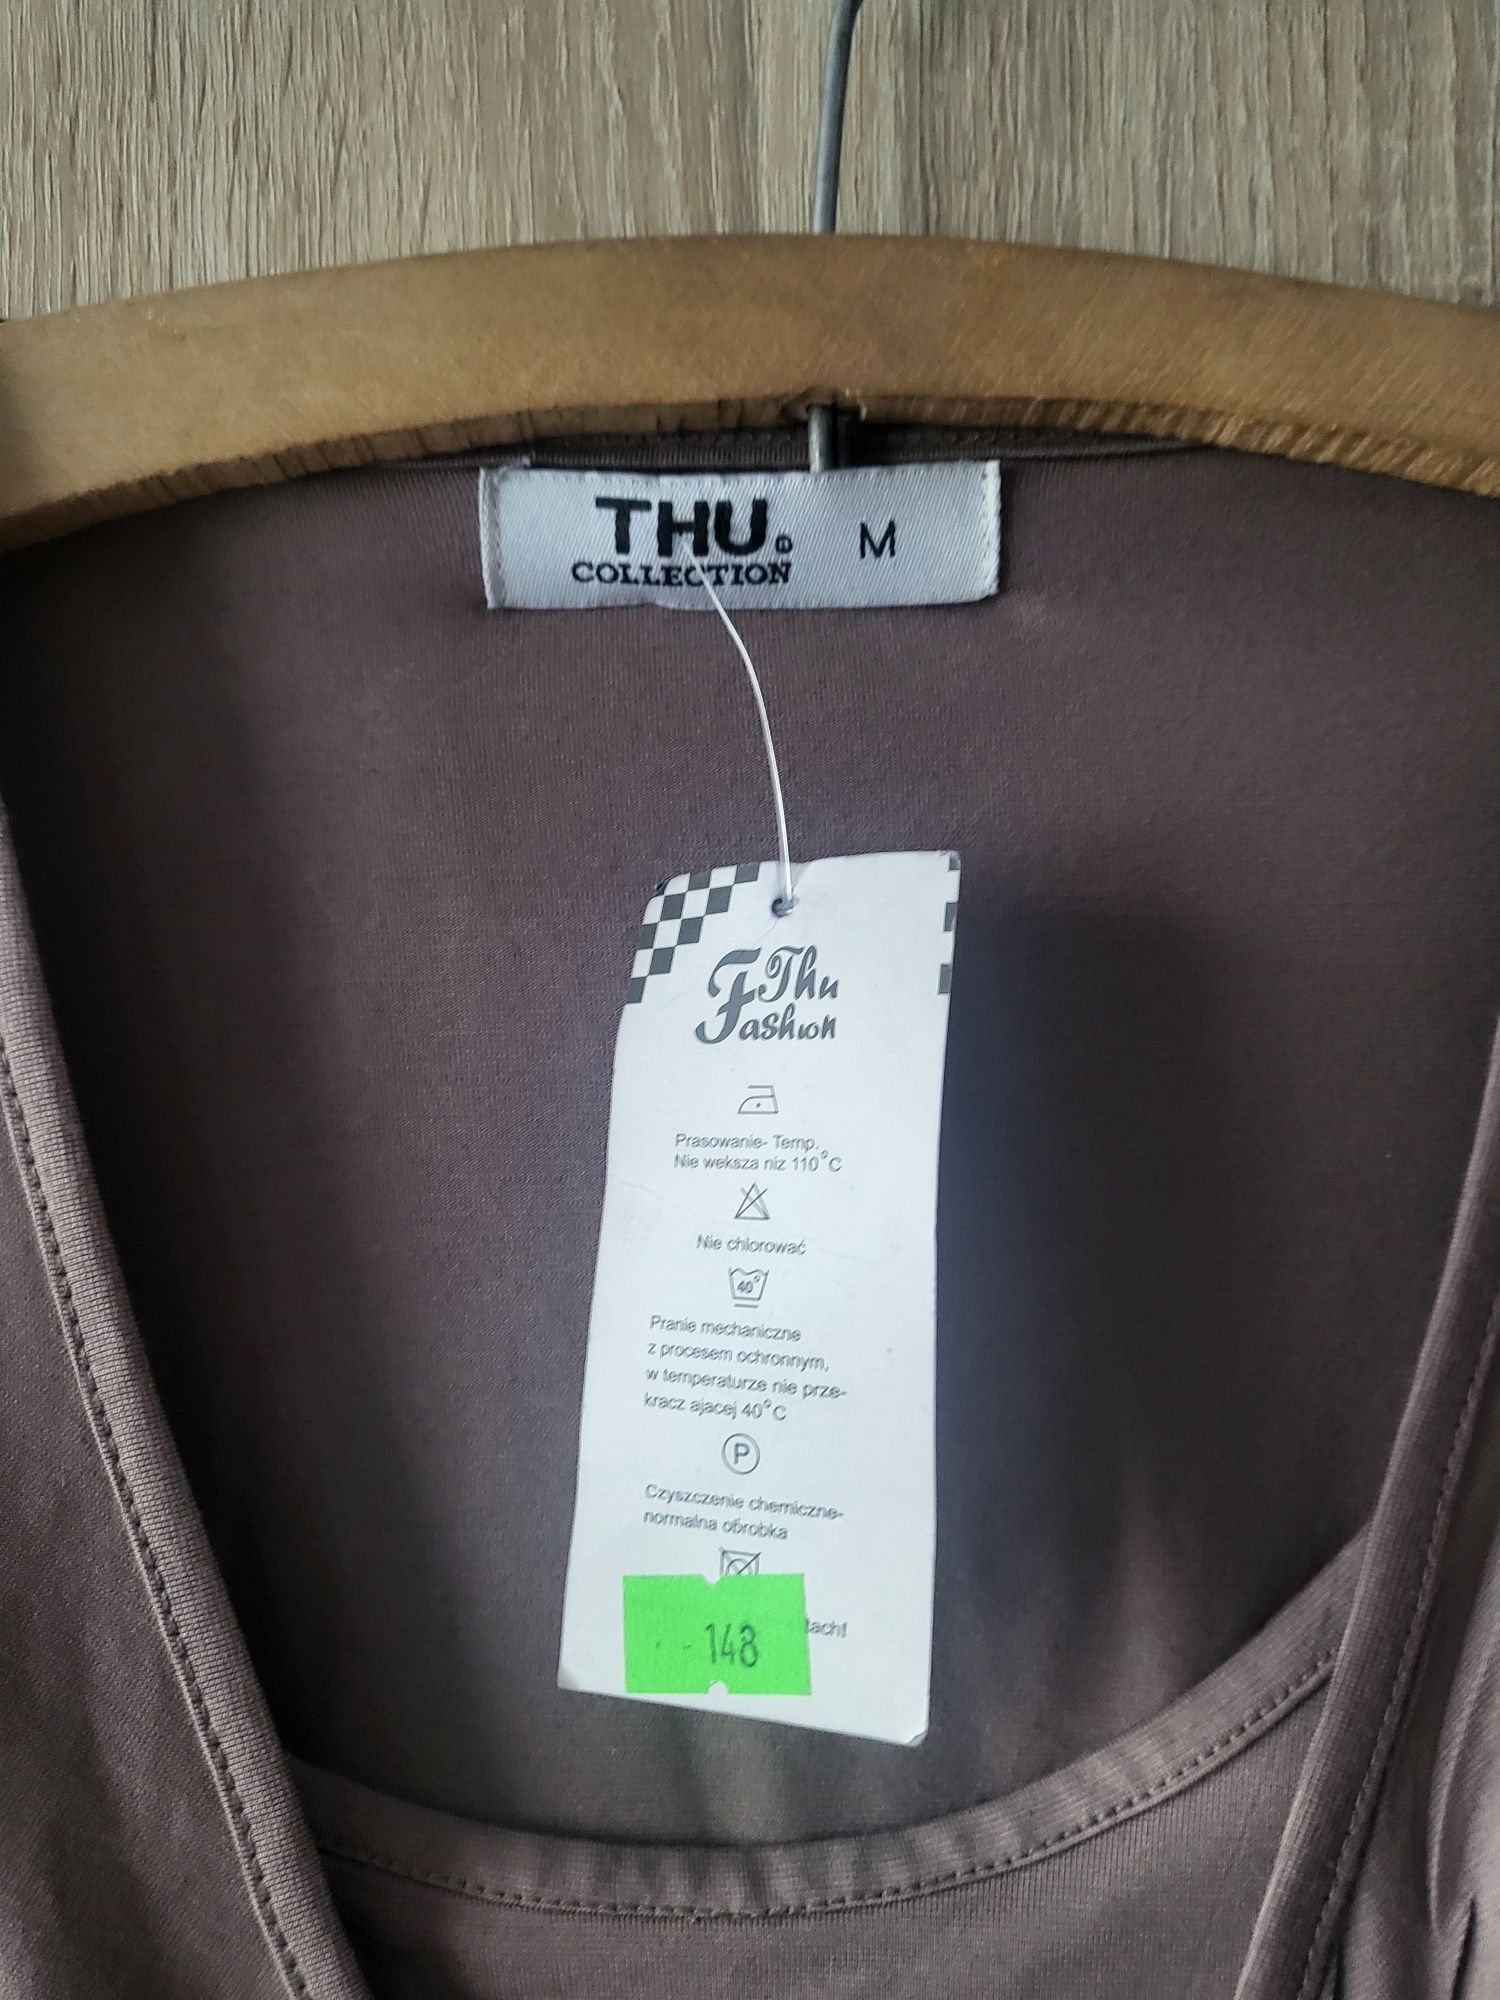 Śliczna bluzka brązowa z aplikacją Thu collection